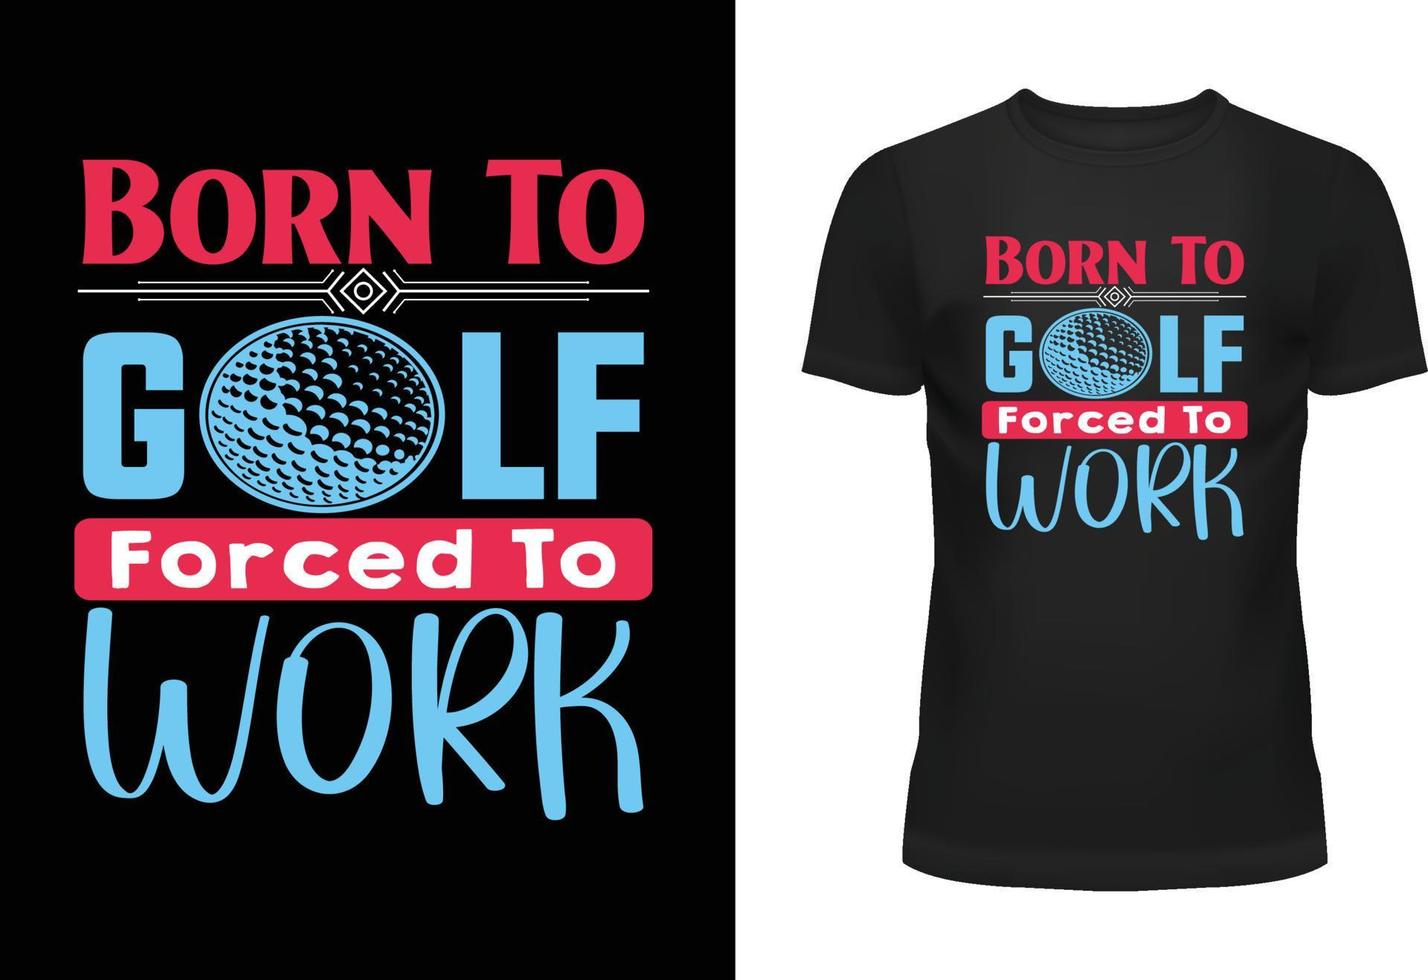 nascermos para golfe forçado para trabalhos tipografia t camisa Projeto vetor